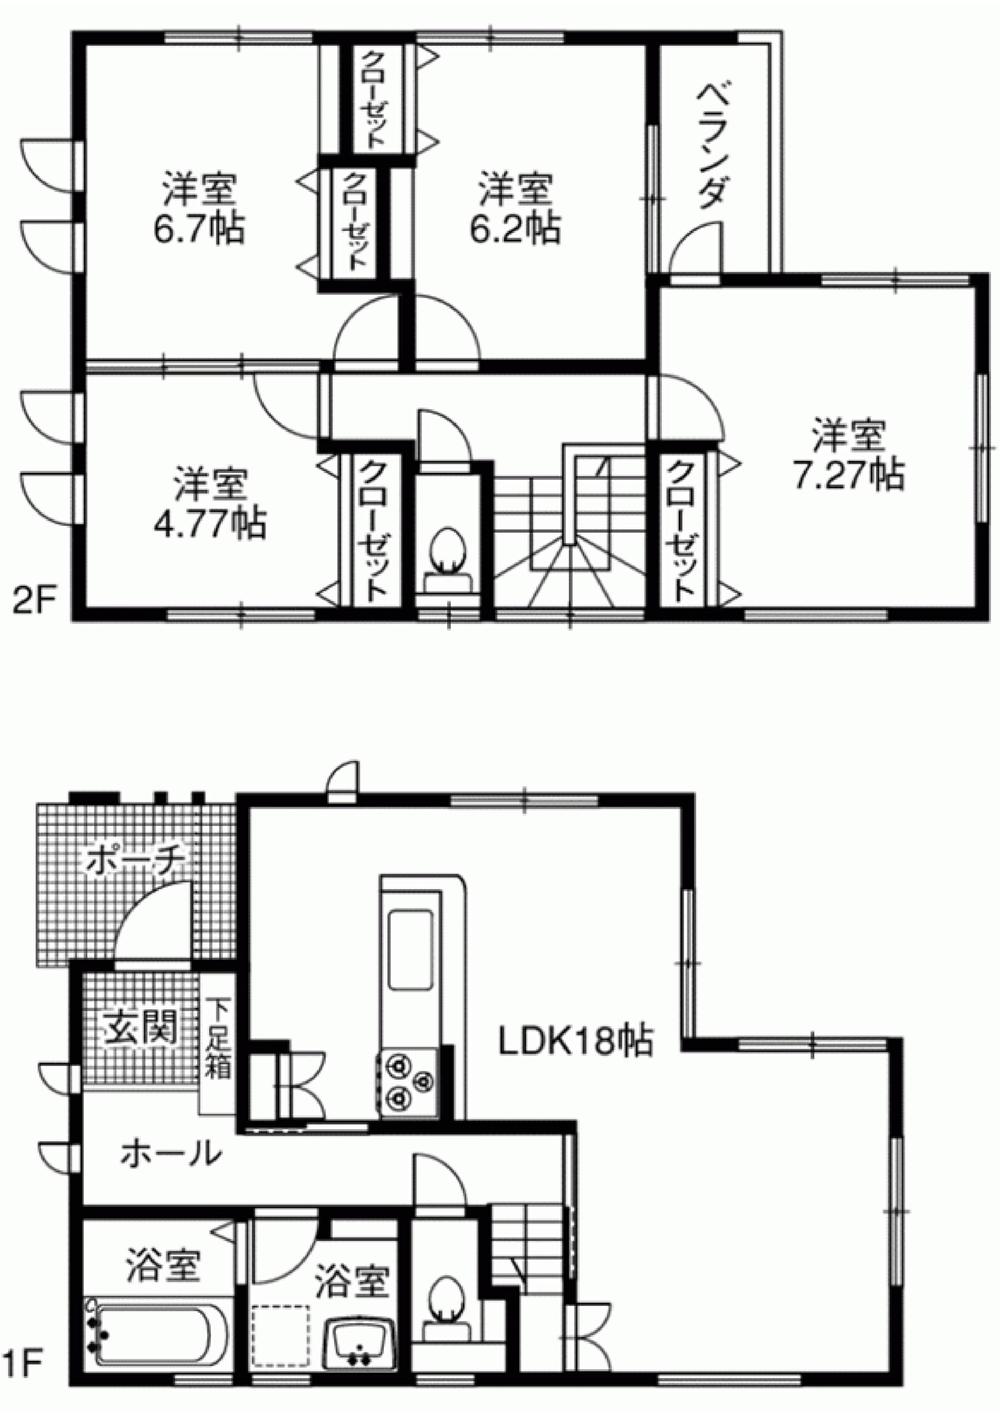 Floor plan. 33 million yen, 4LDK, Land area 111.91 sq m , Building area 100.03 sq m